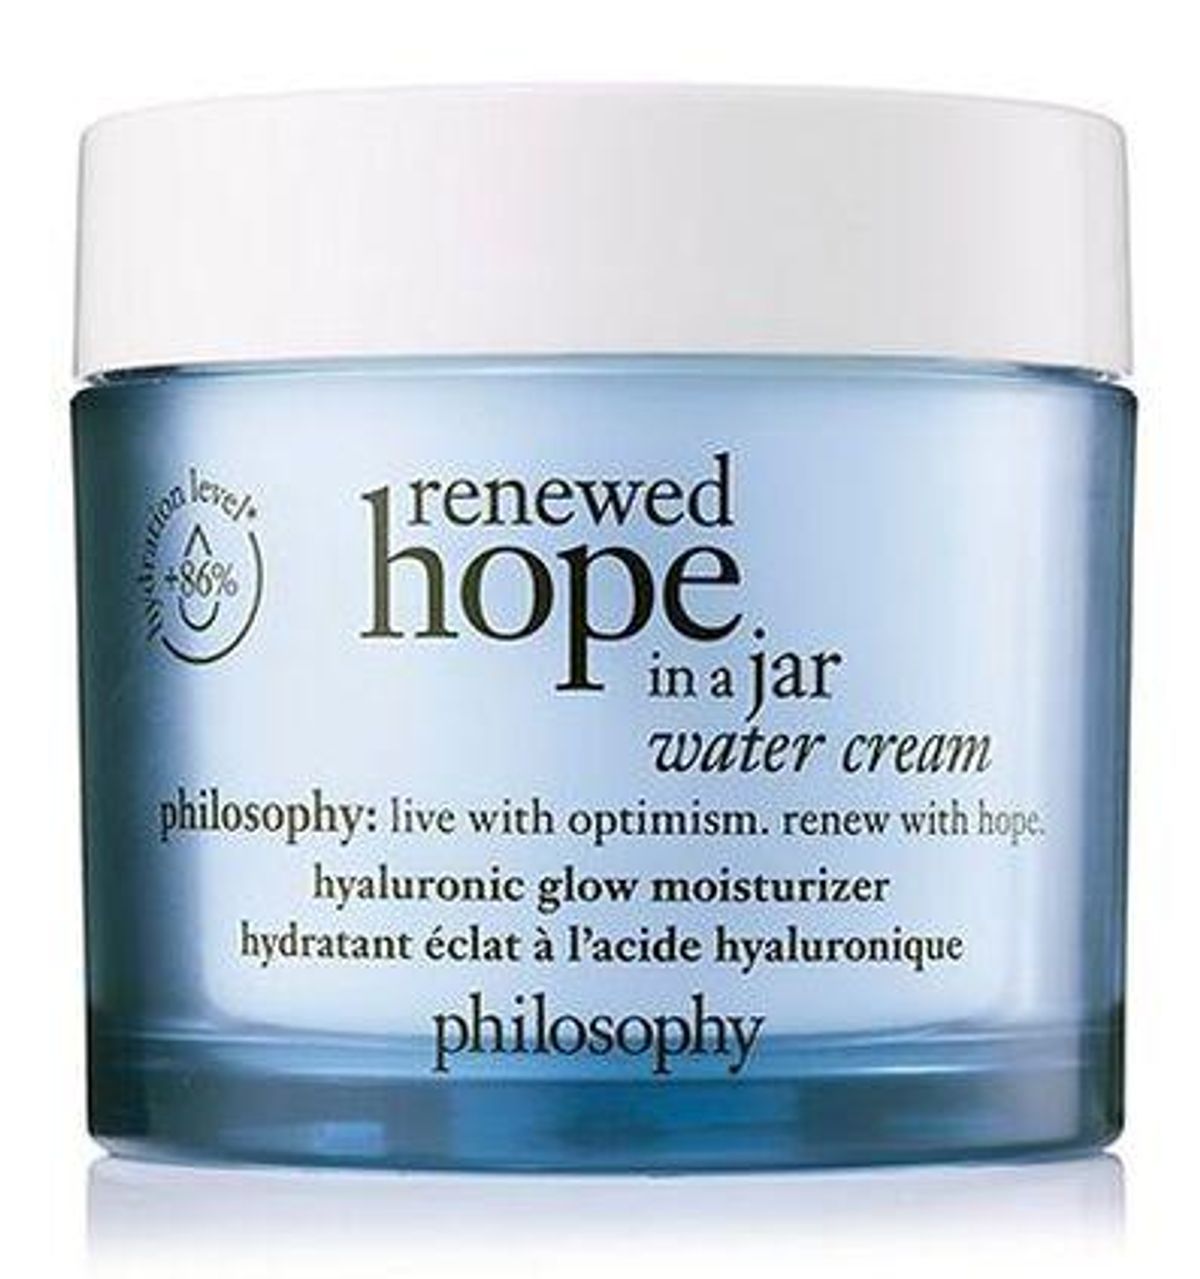 philosophy renewed hope in a jar water cream hyaluronic glow moisturizer